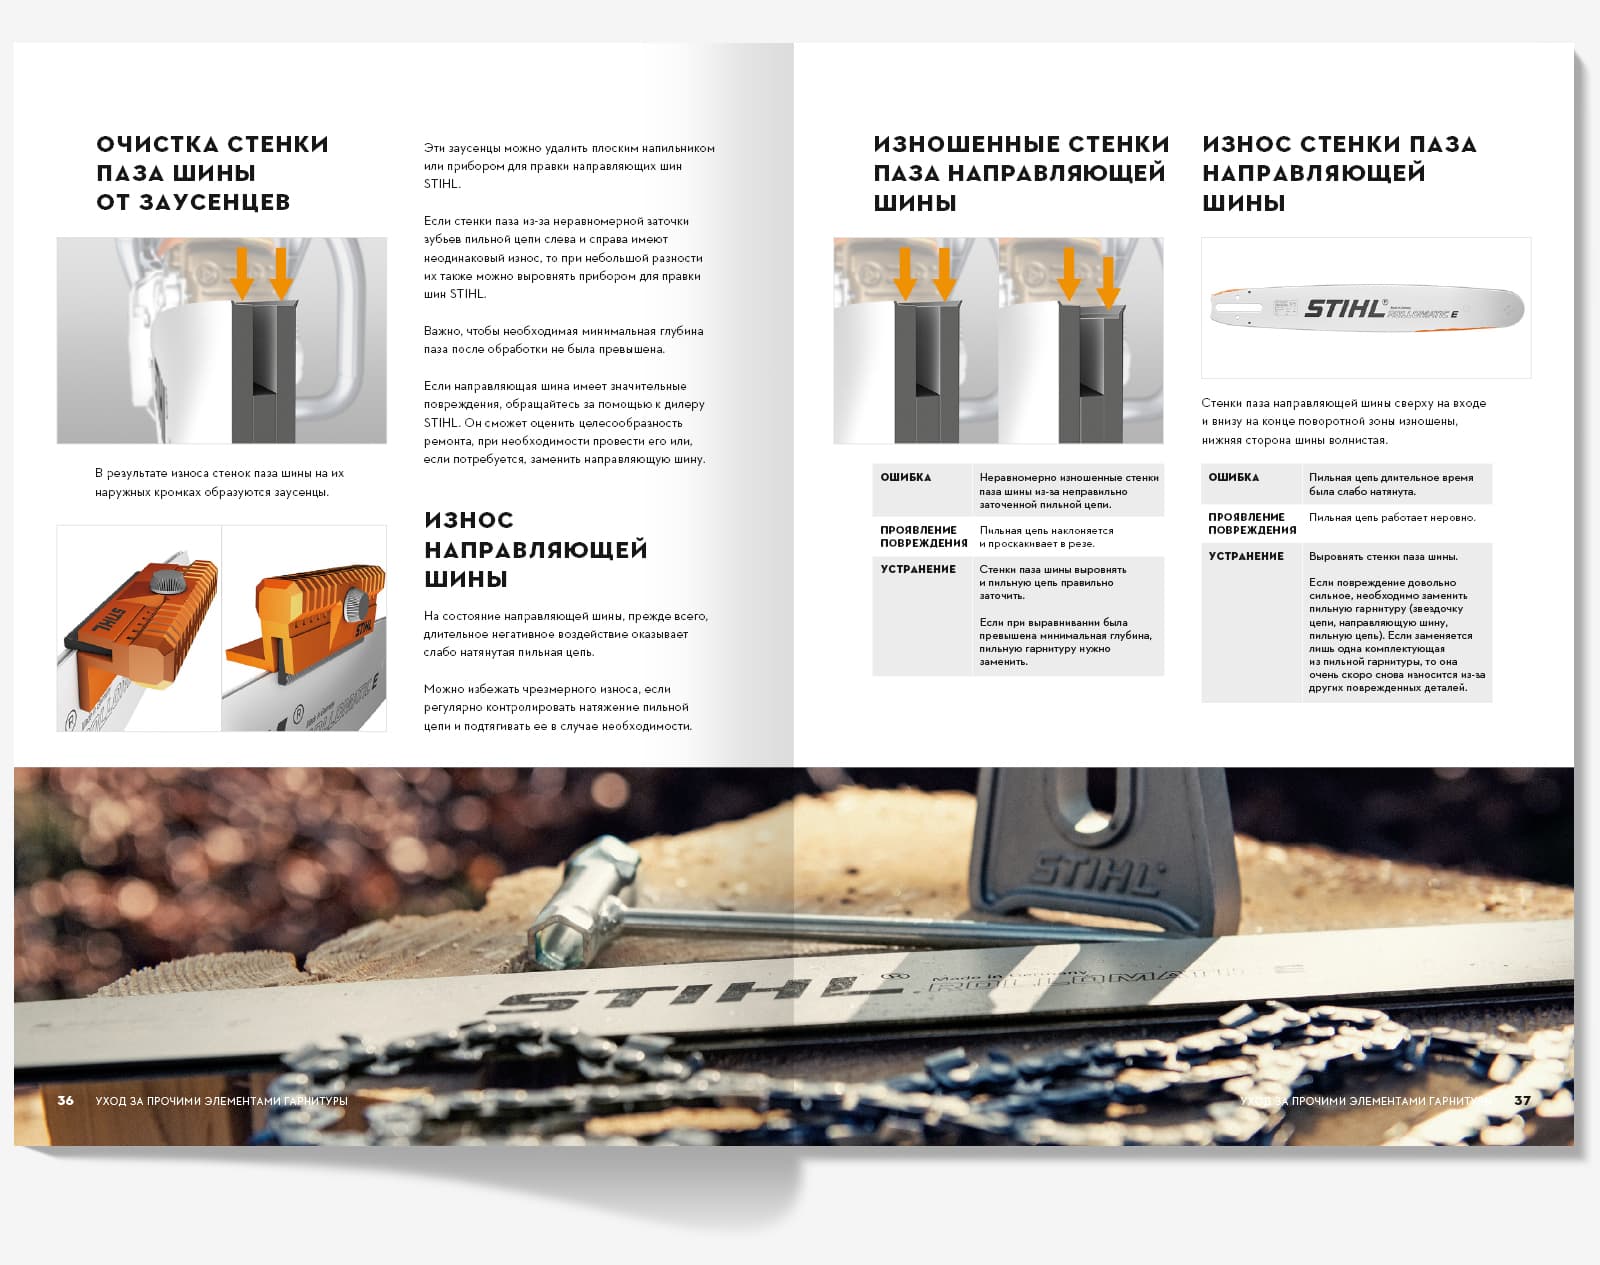 Сделали дизайн брошюры «Как ухаживать за пильной гарнитурой» для компании STIHL